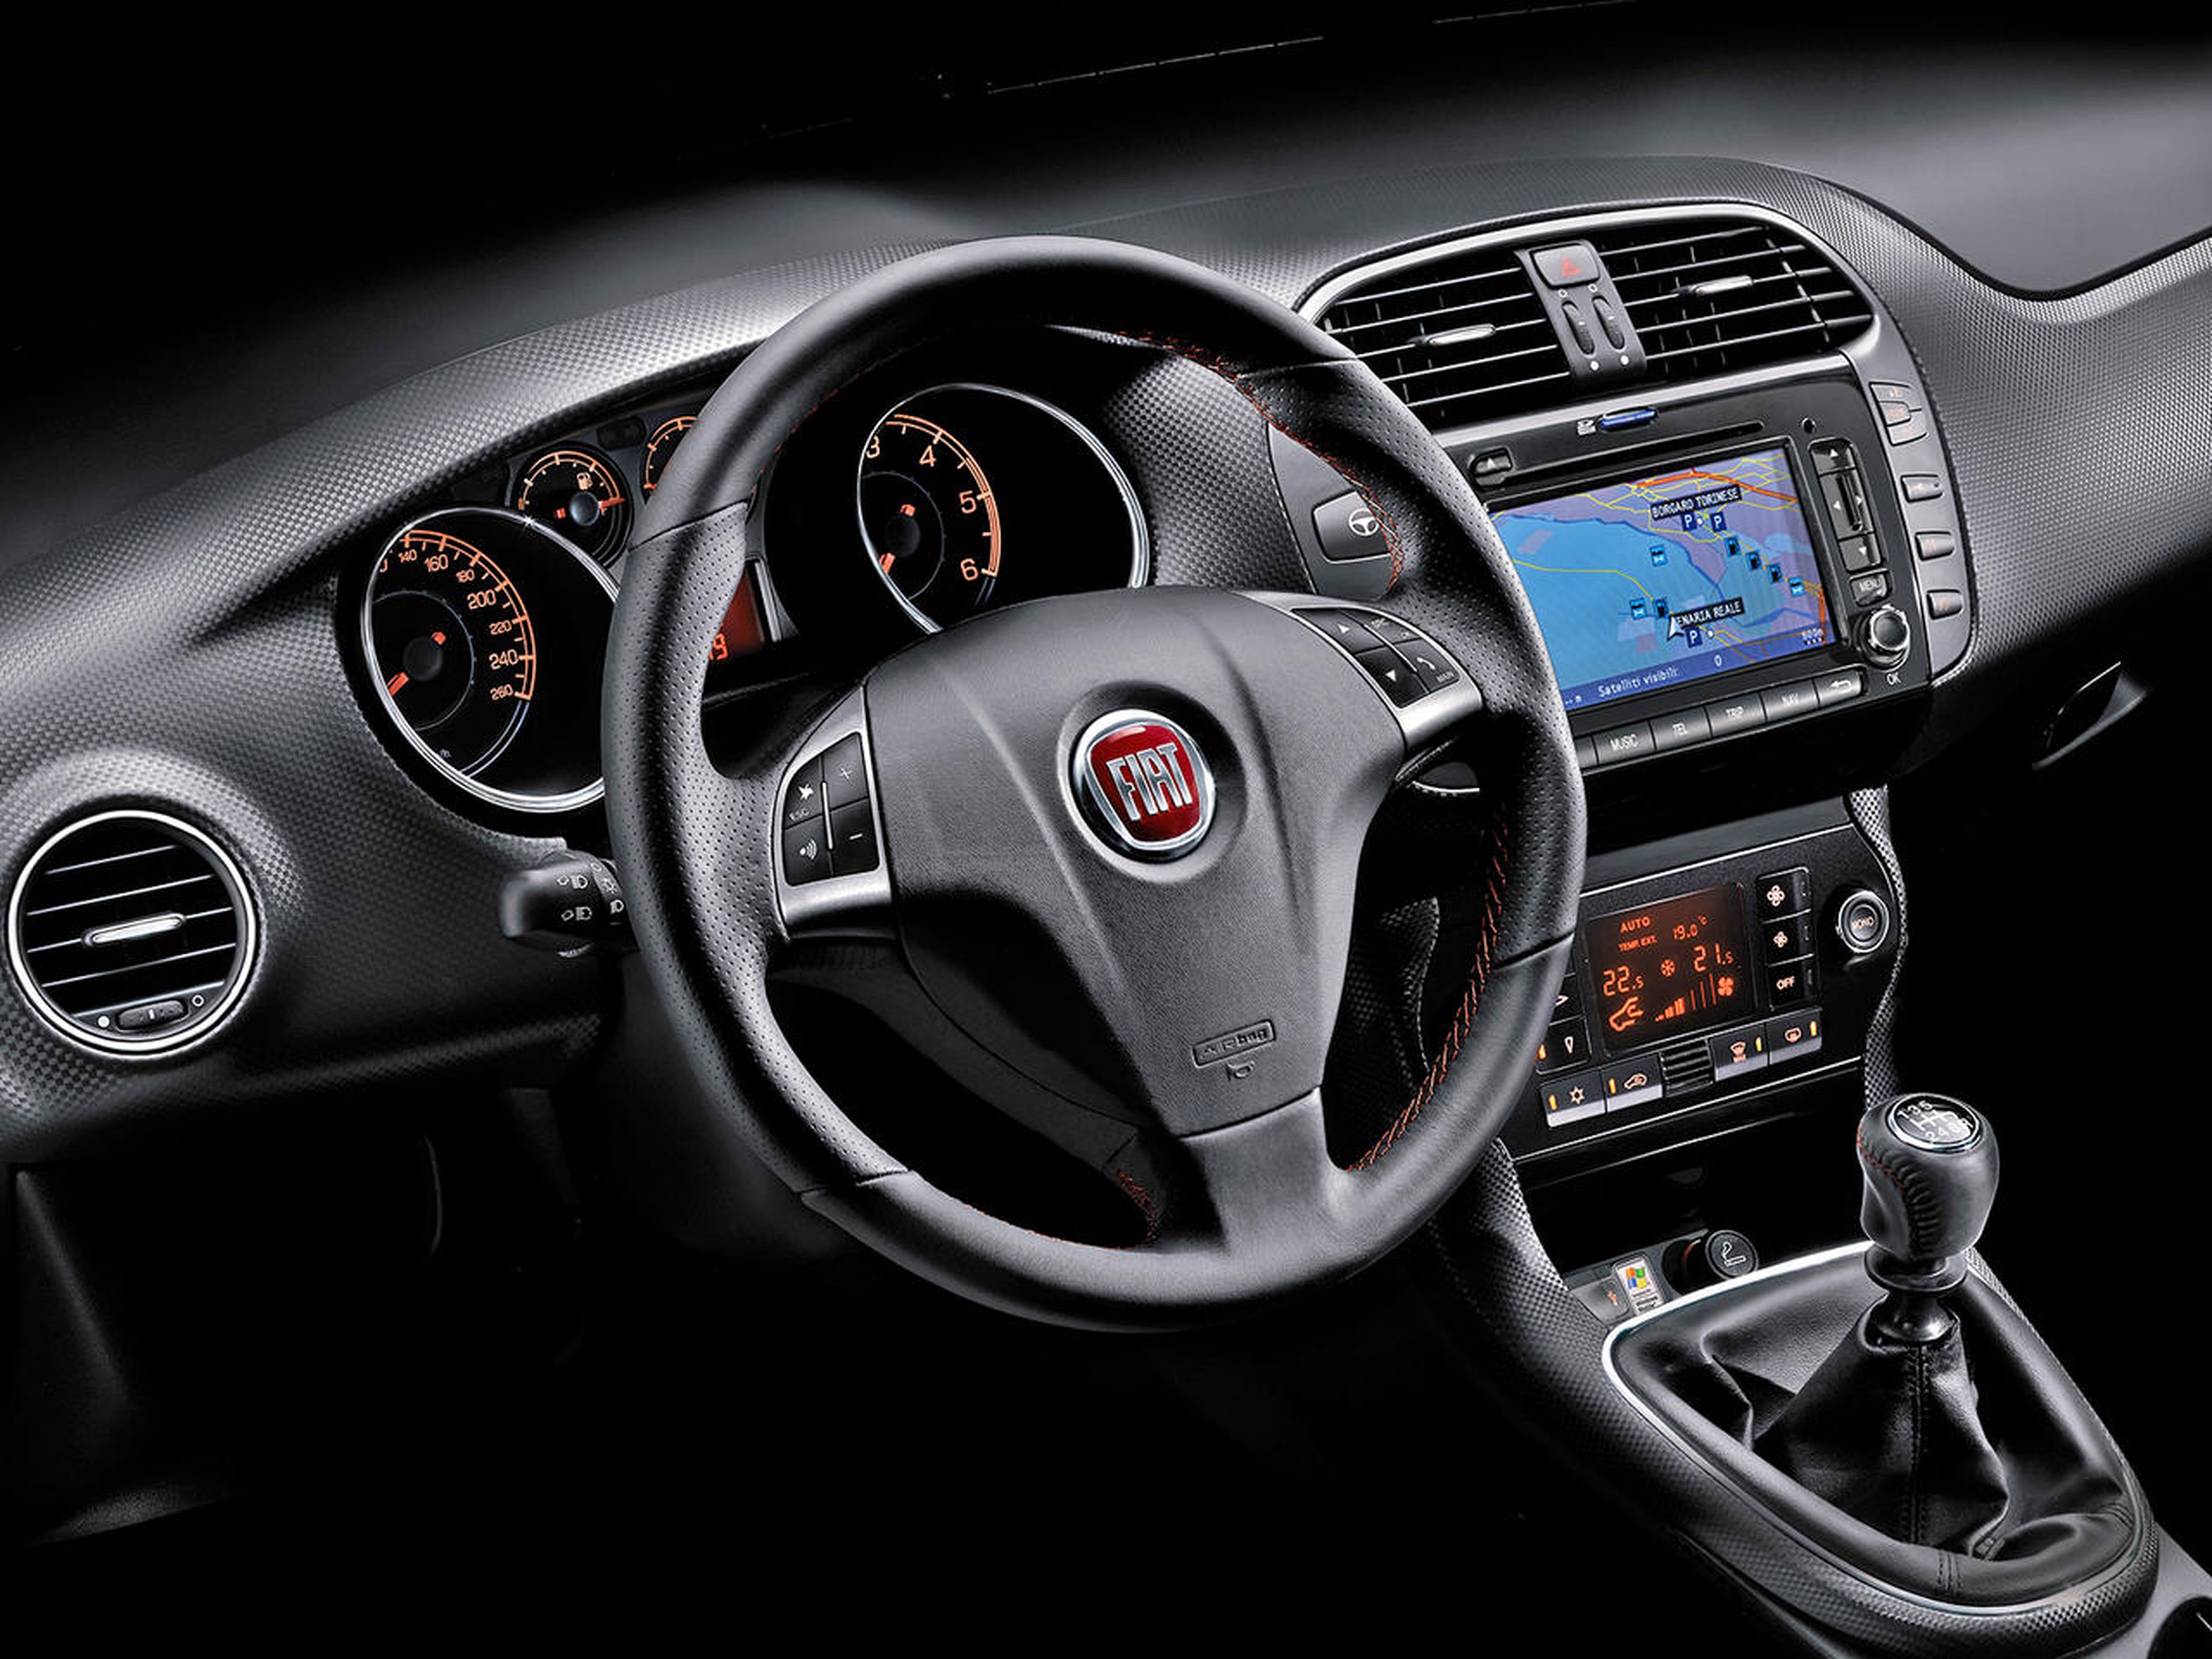 Fiat Bravo, todas las versiones y motorizaciones del mercado, con precios,  imágenes, datos técnicos y pruebas.